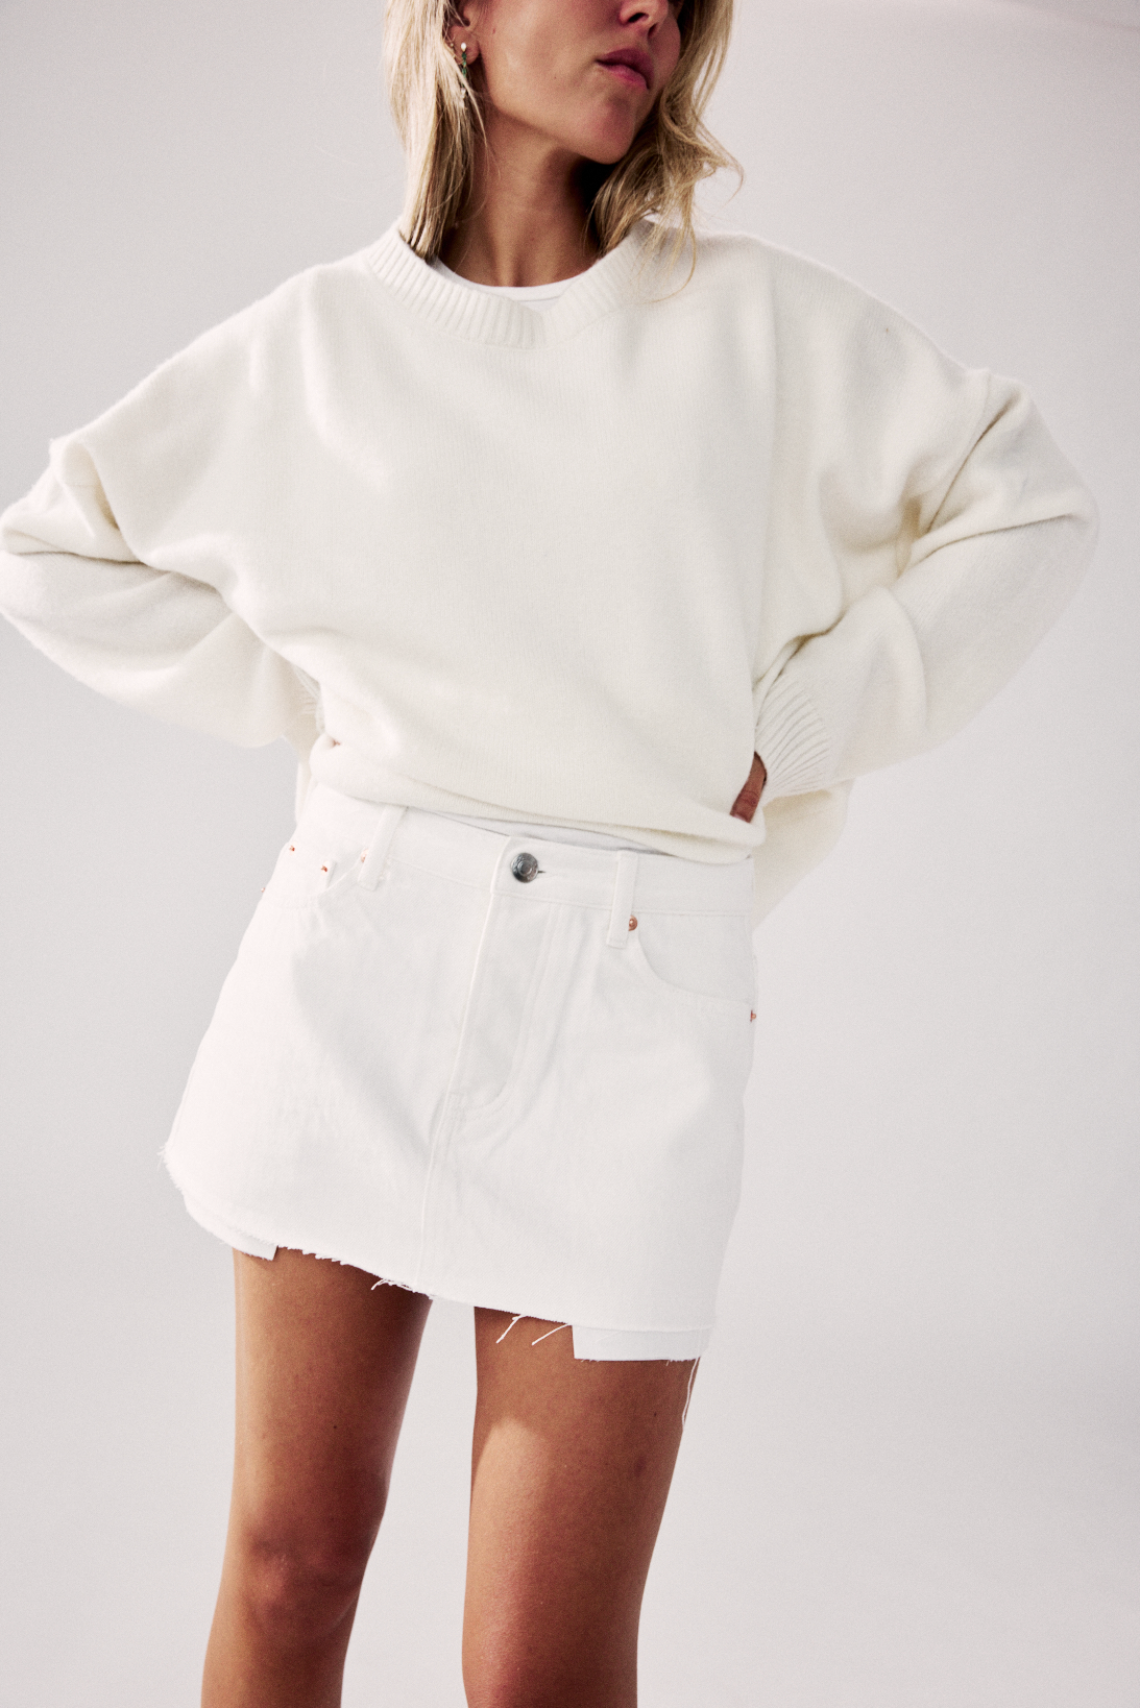 White Denim Mini Skirt